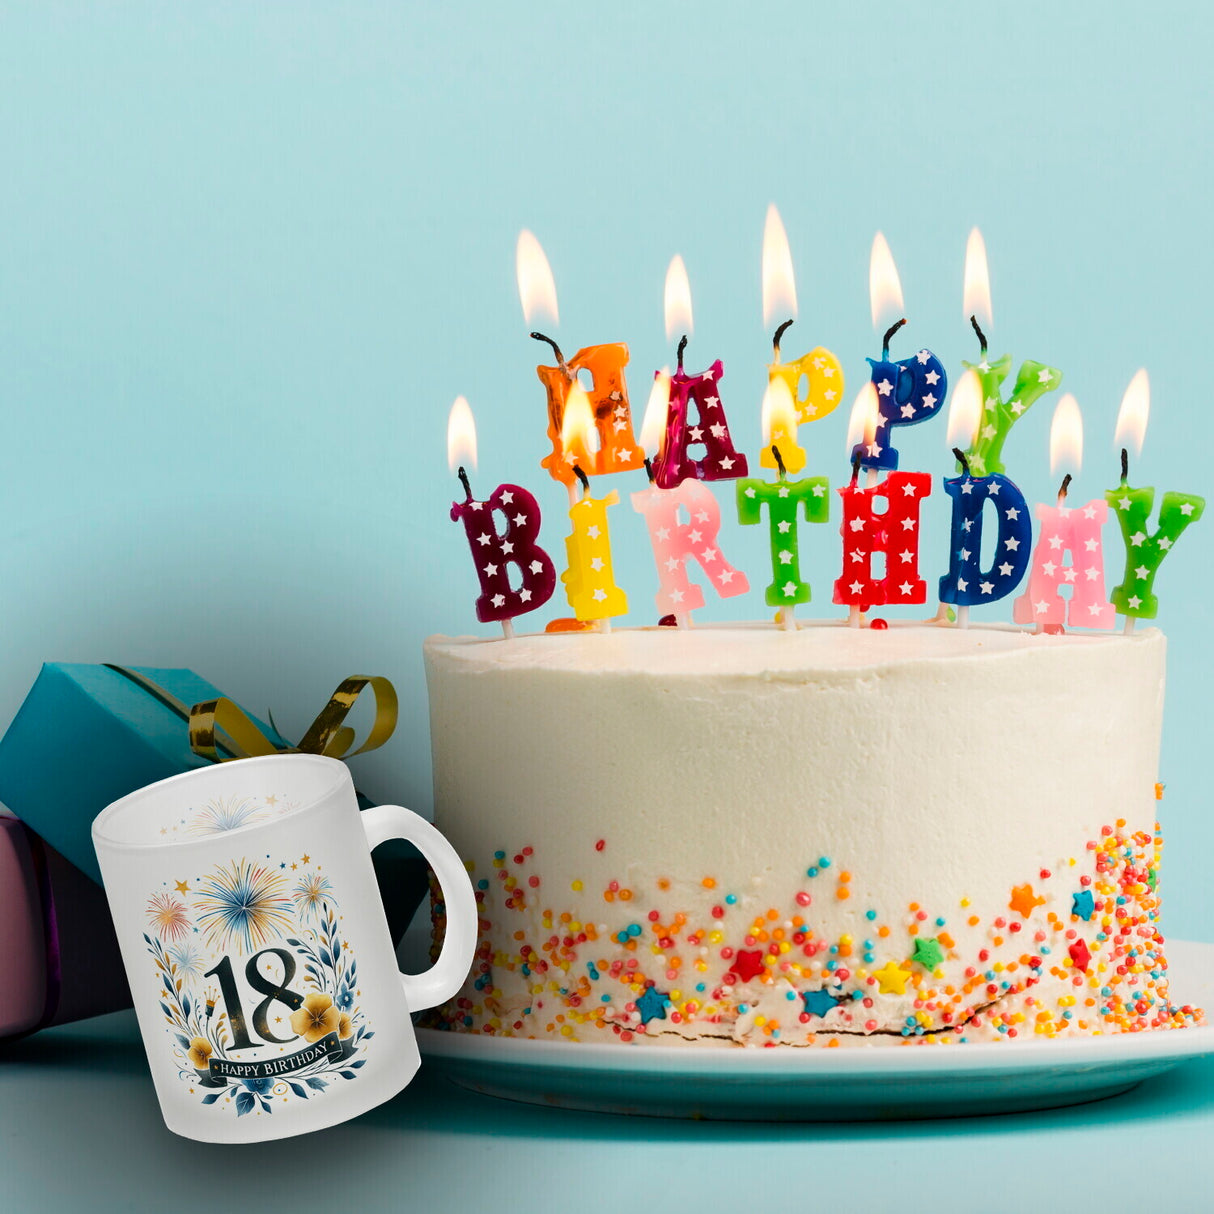 18. Geburtstag Kaffeebecher mit Spruch Happy Birthday 18